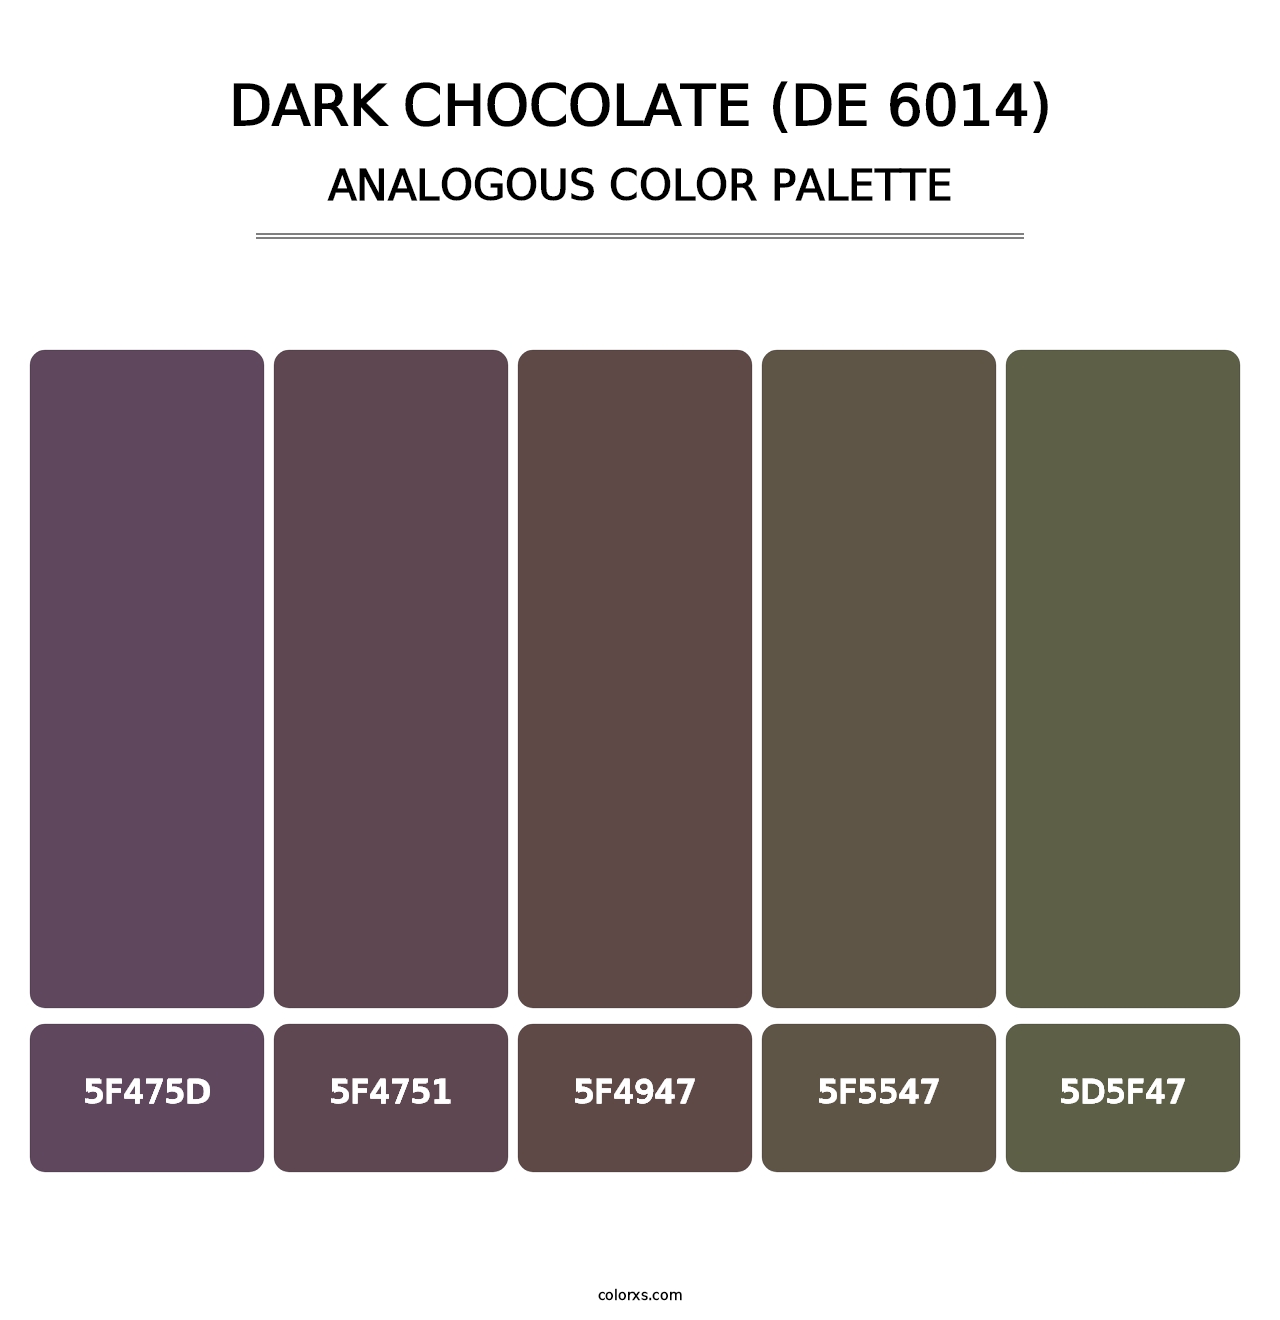 Dark Chocolate (DE 6014) - Analogous Color Palette